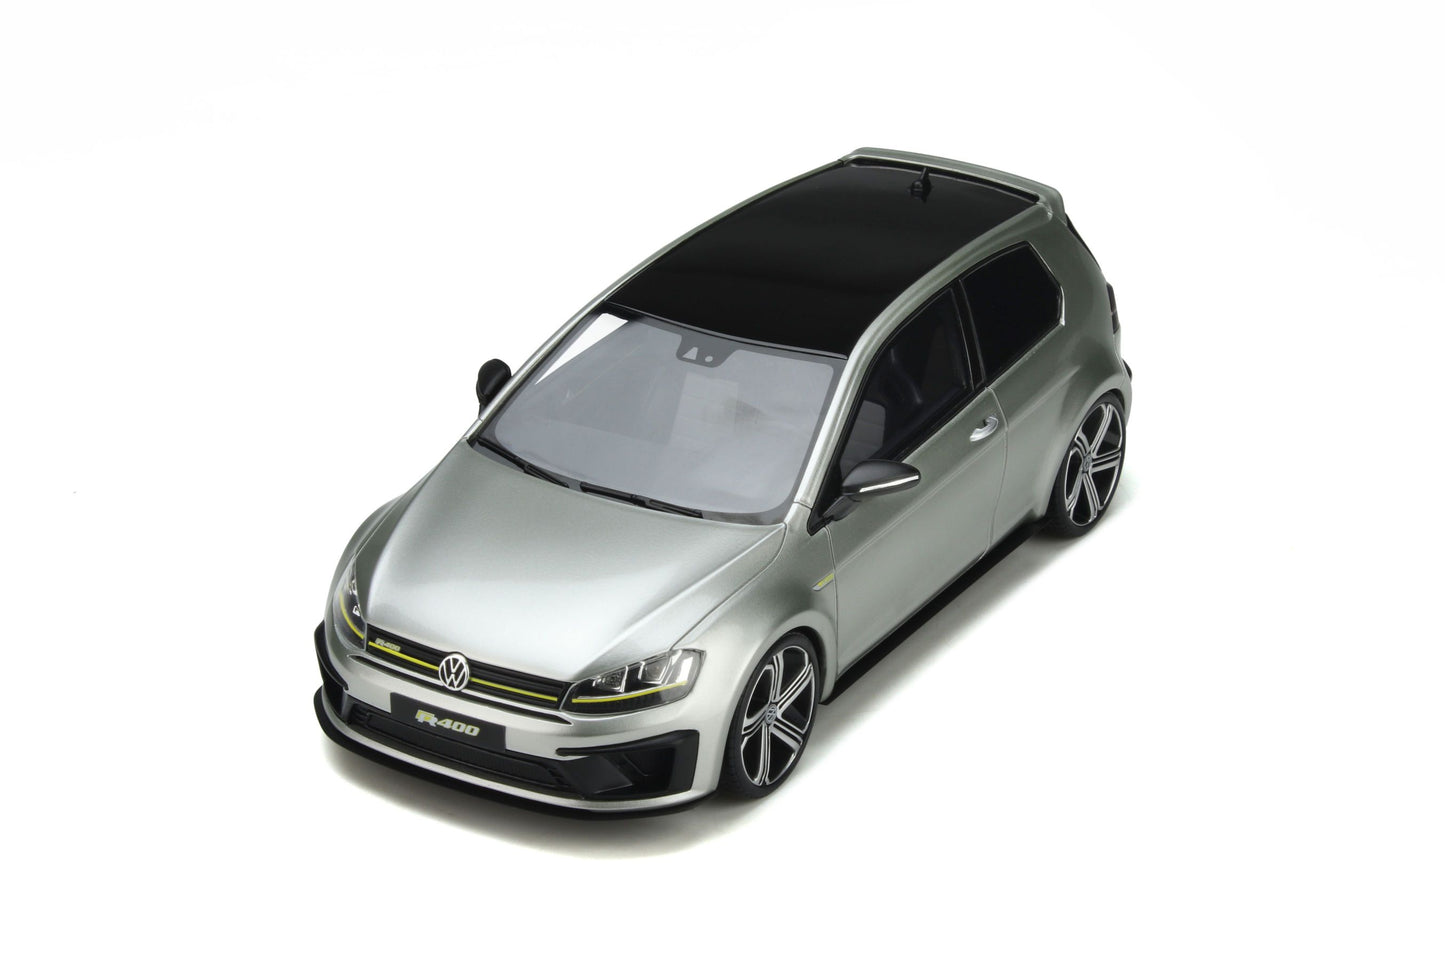 OttOmobile - Volkswagen Golf R400 Concept (MK7) (Reflex Silver) 1:18 Scale Model Car